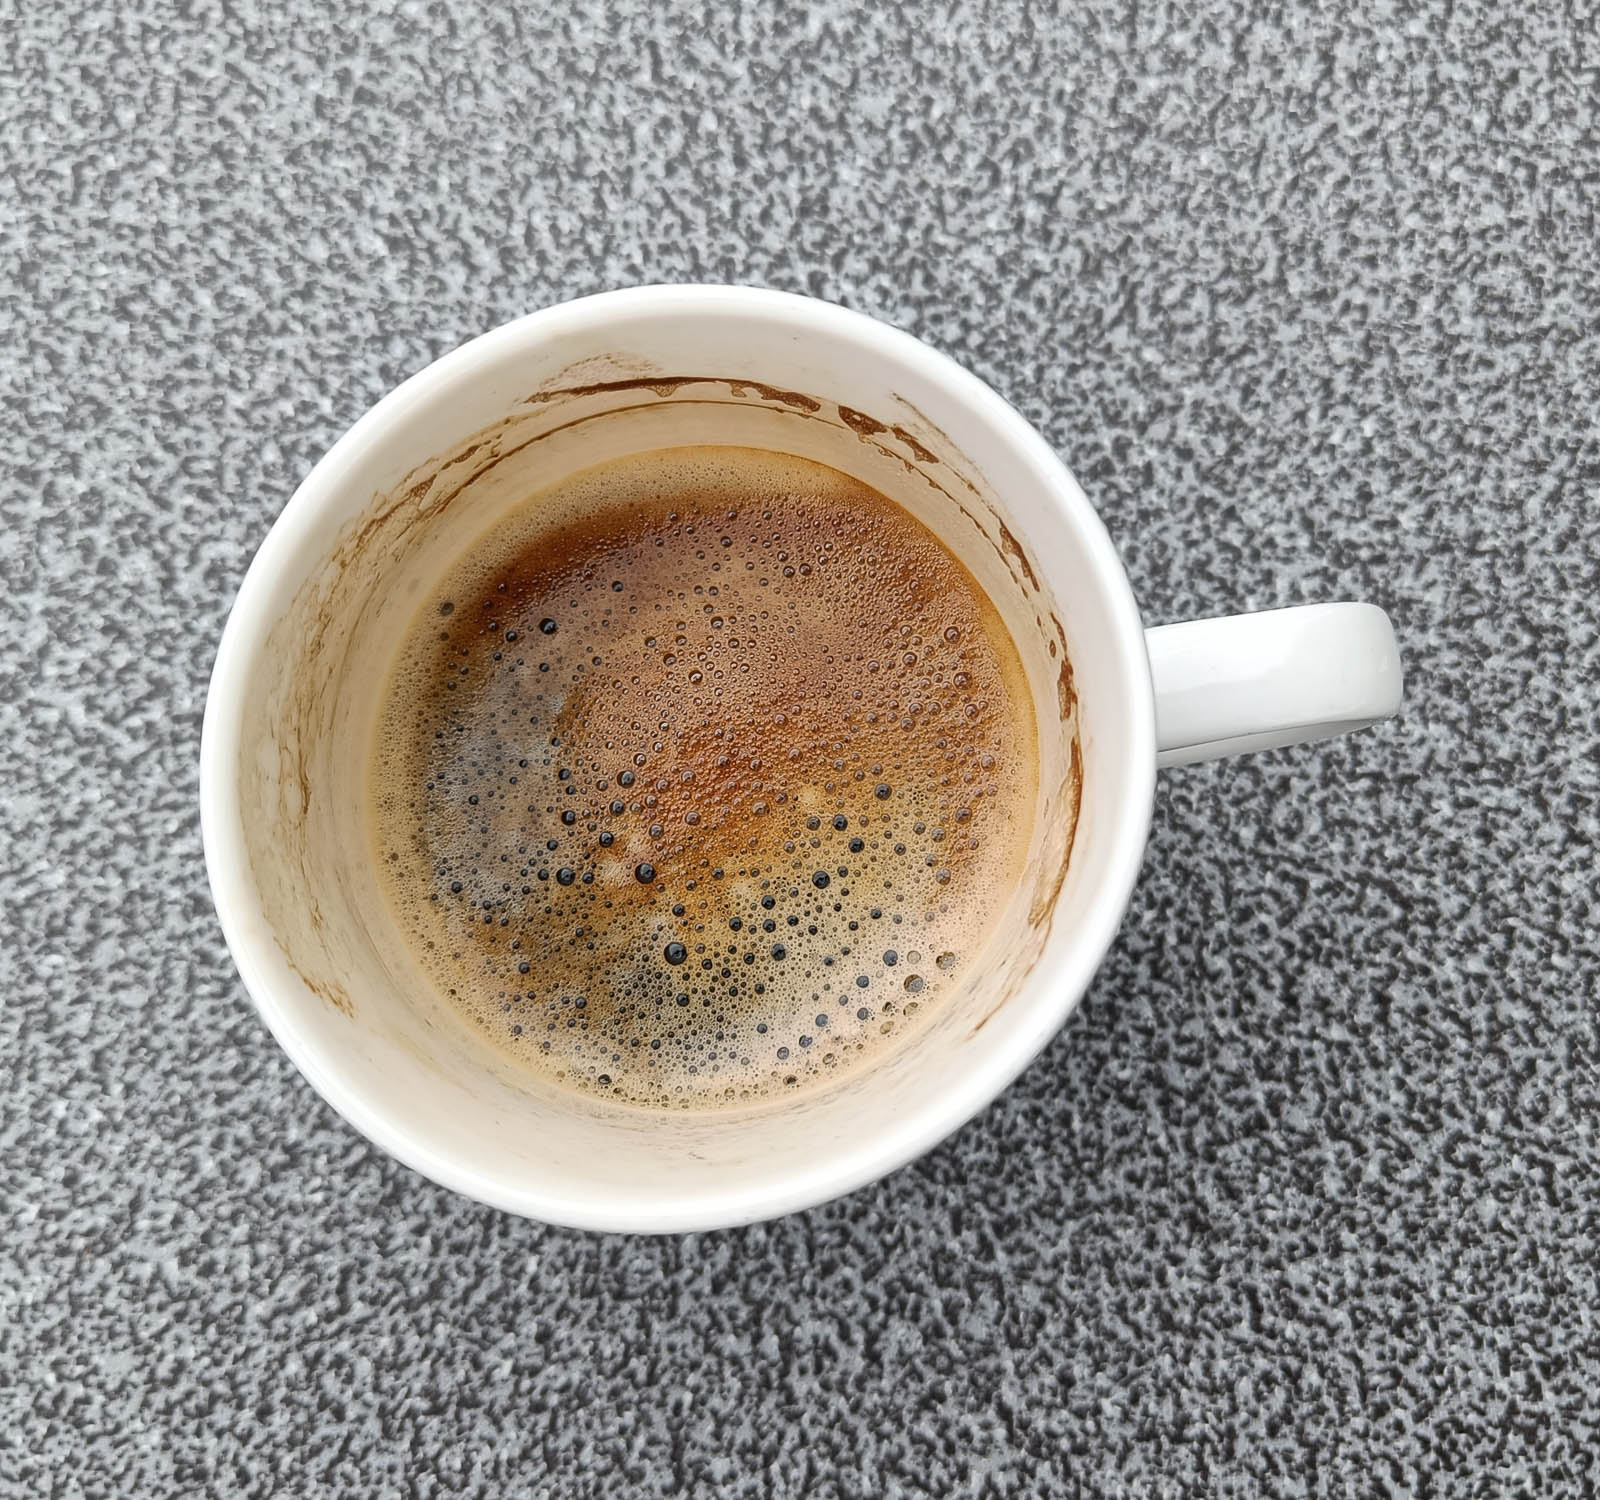 Der erste Kaffe aus dem neuen Akku - mit leichter Boosternote im Abgang :)